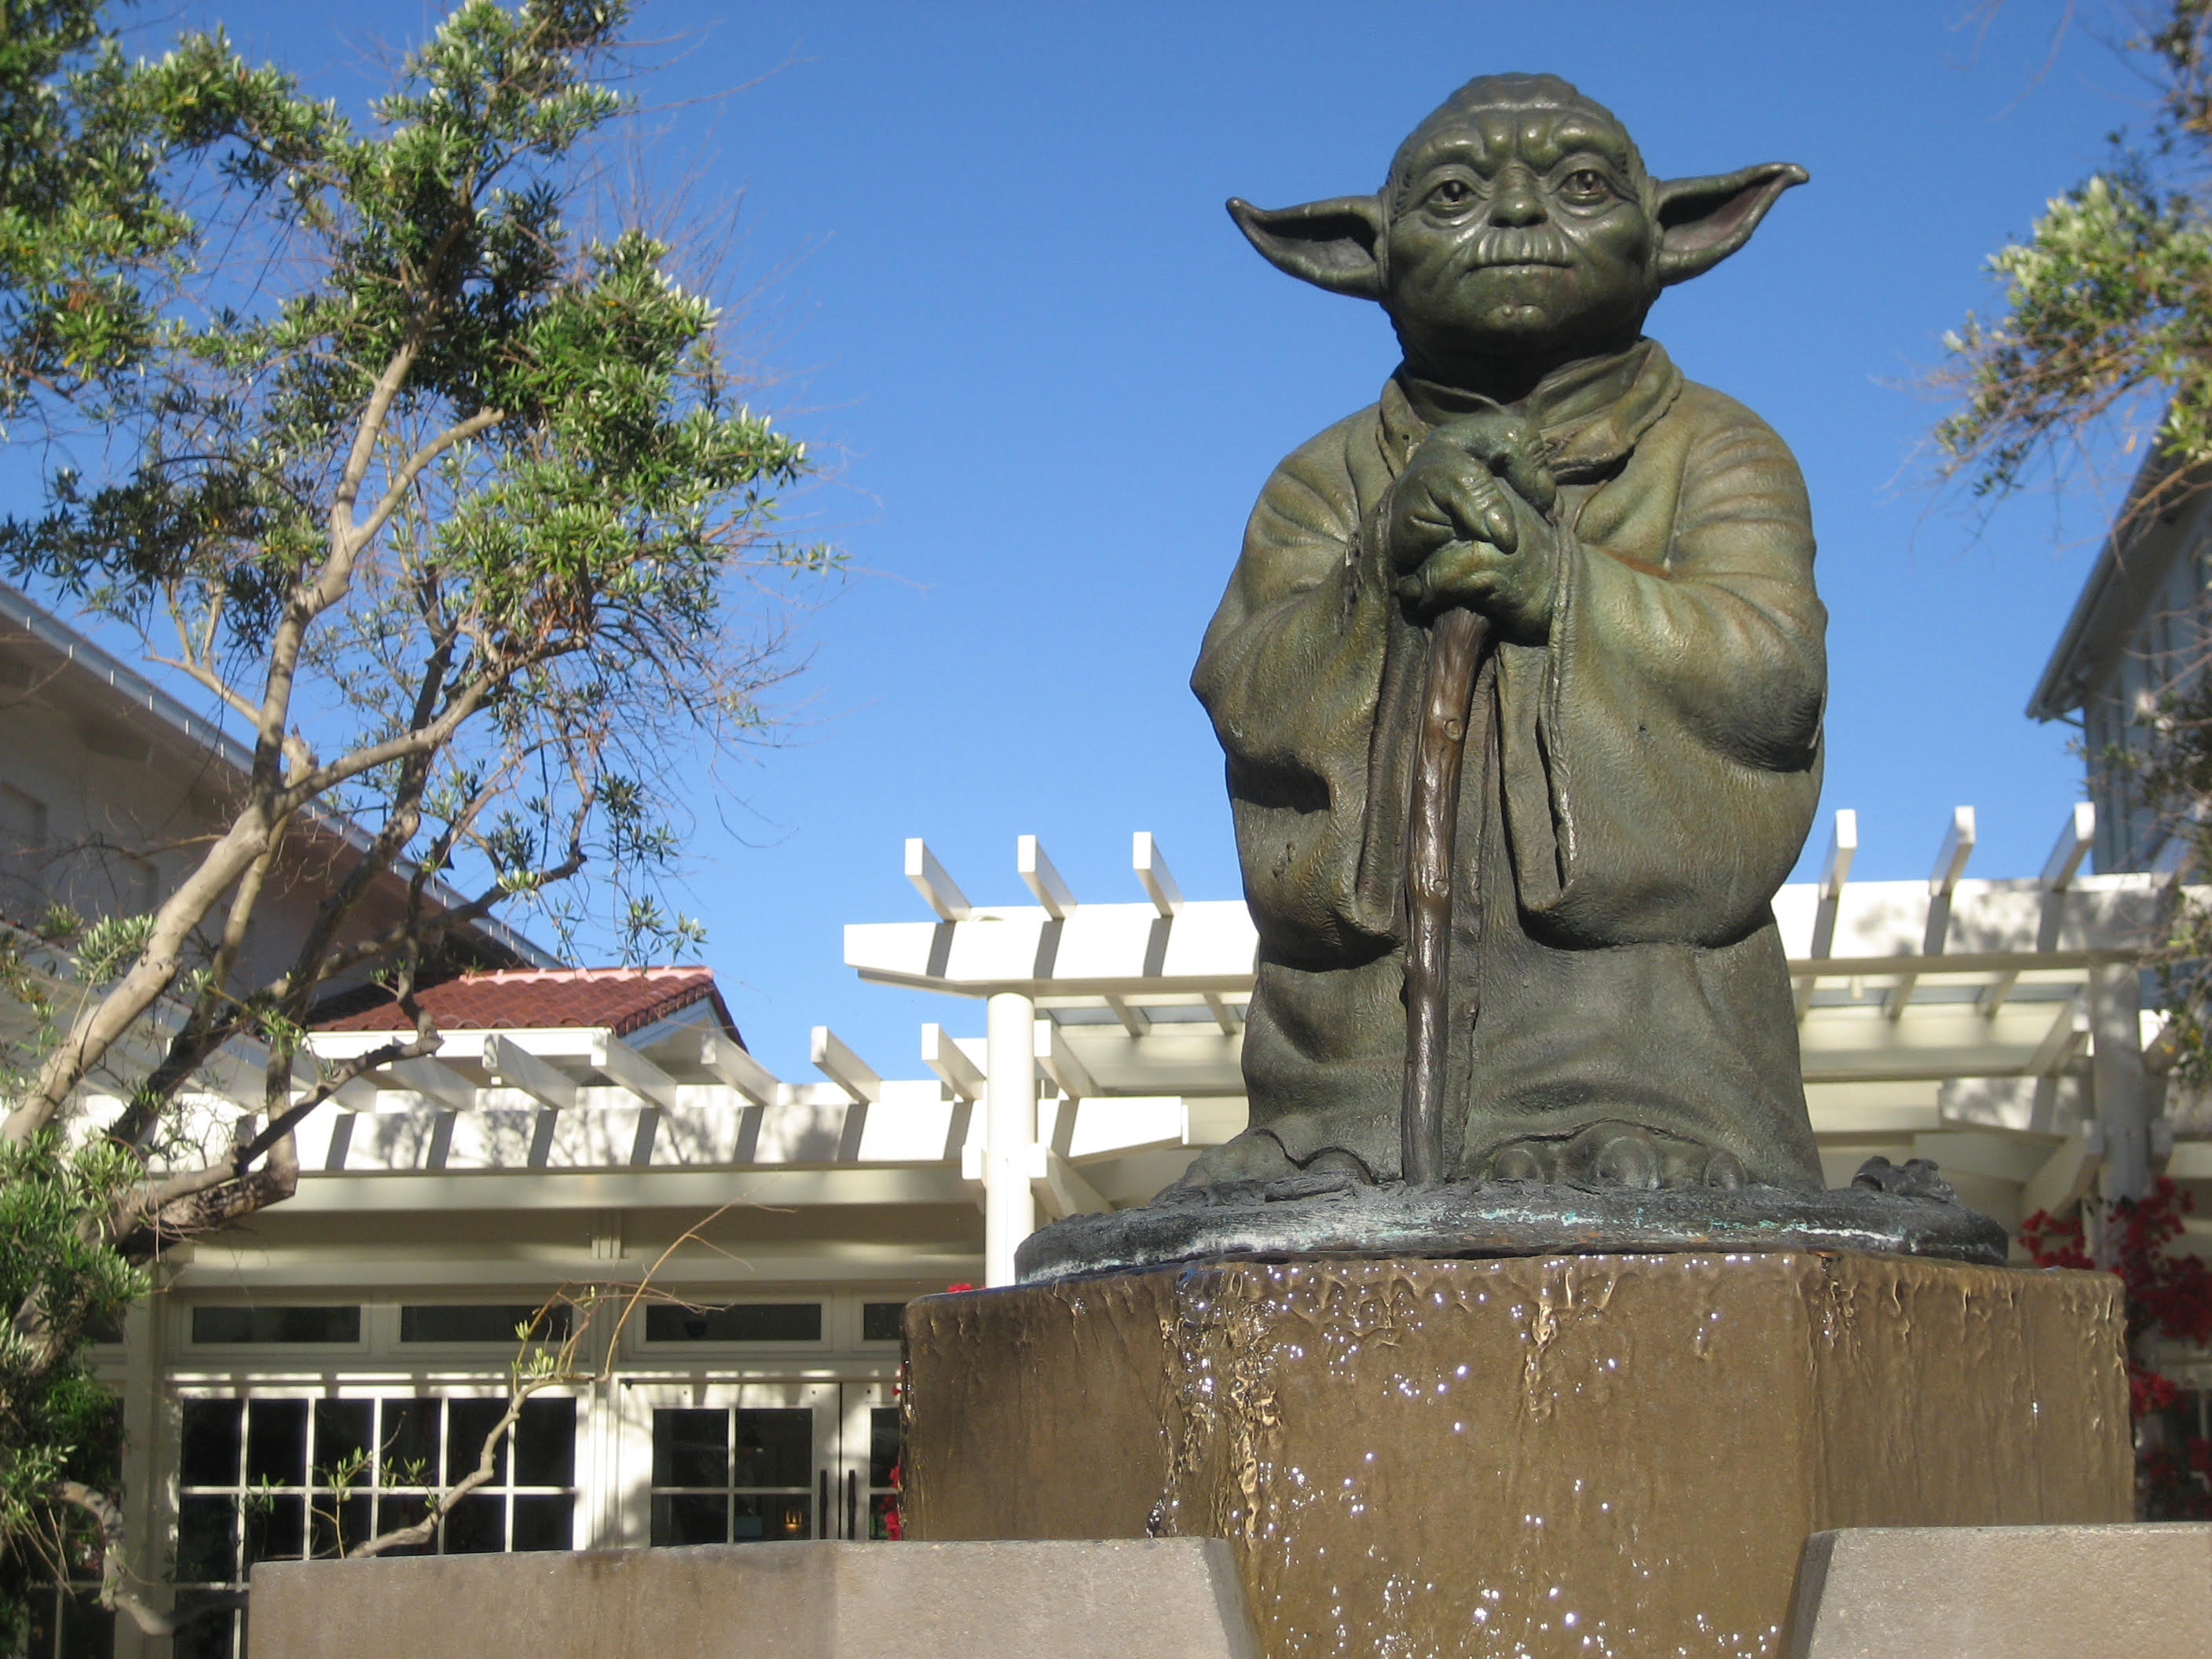 Yoda Fountain